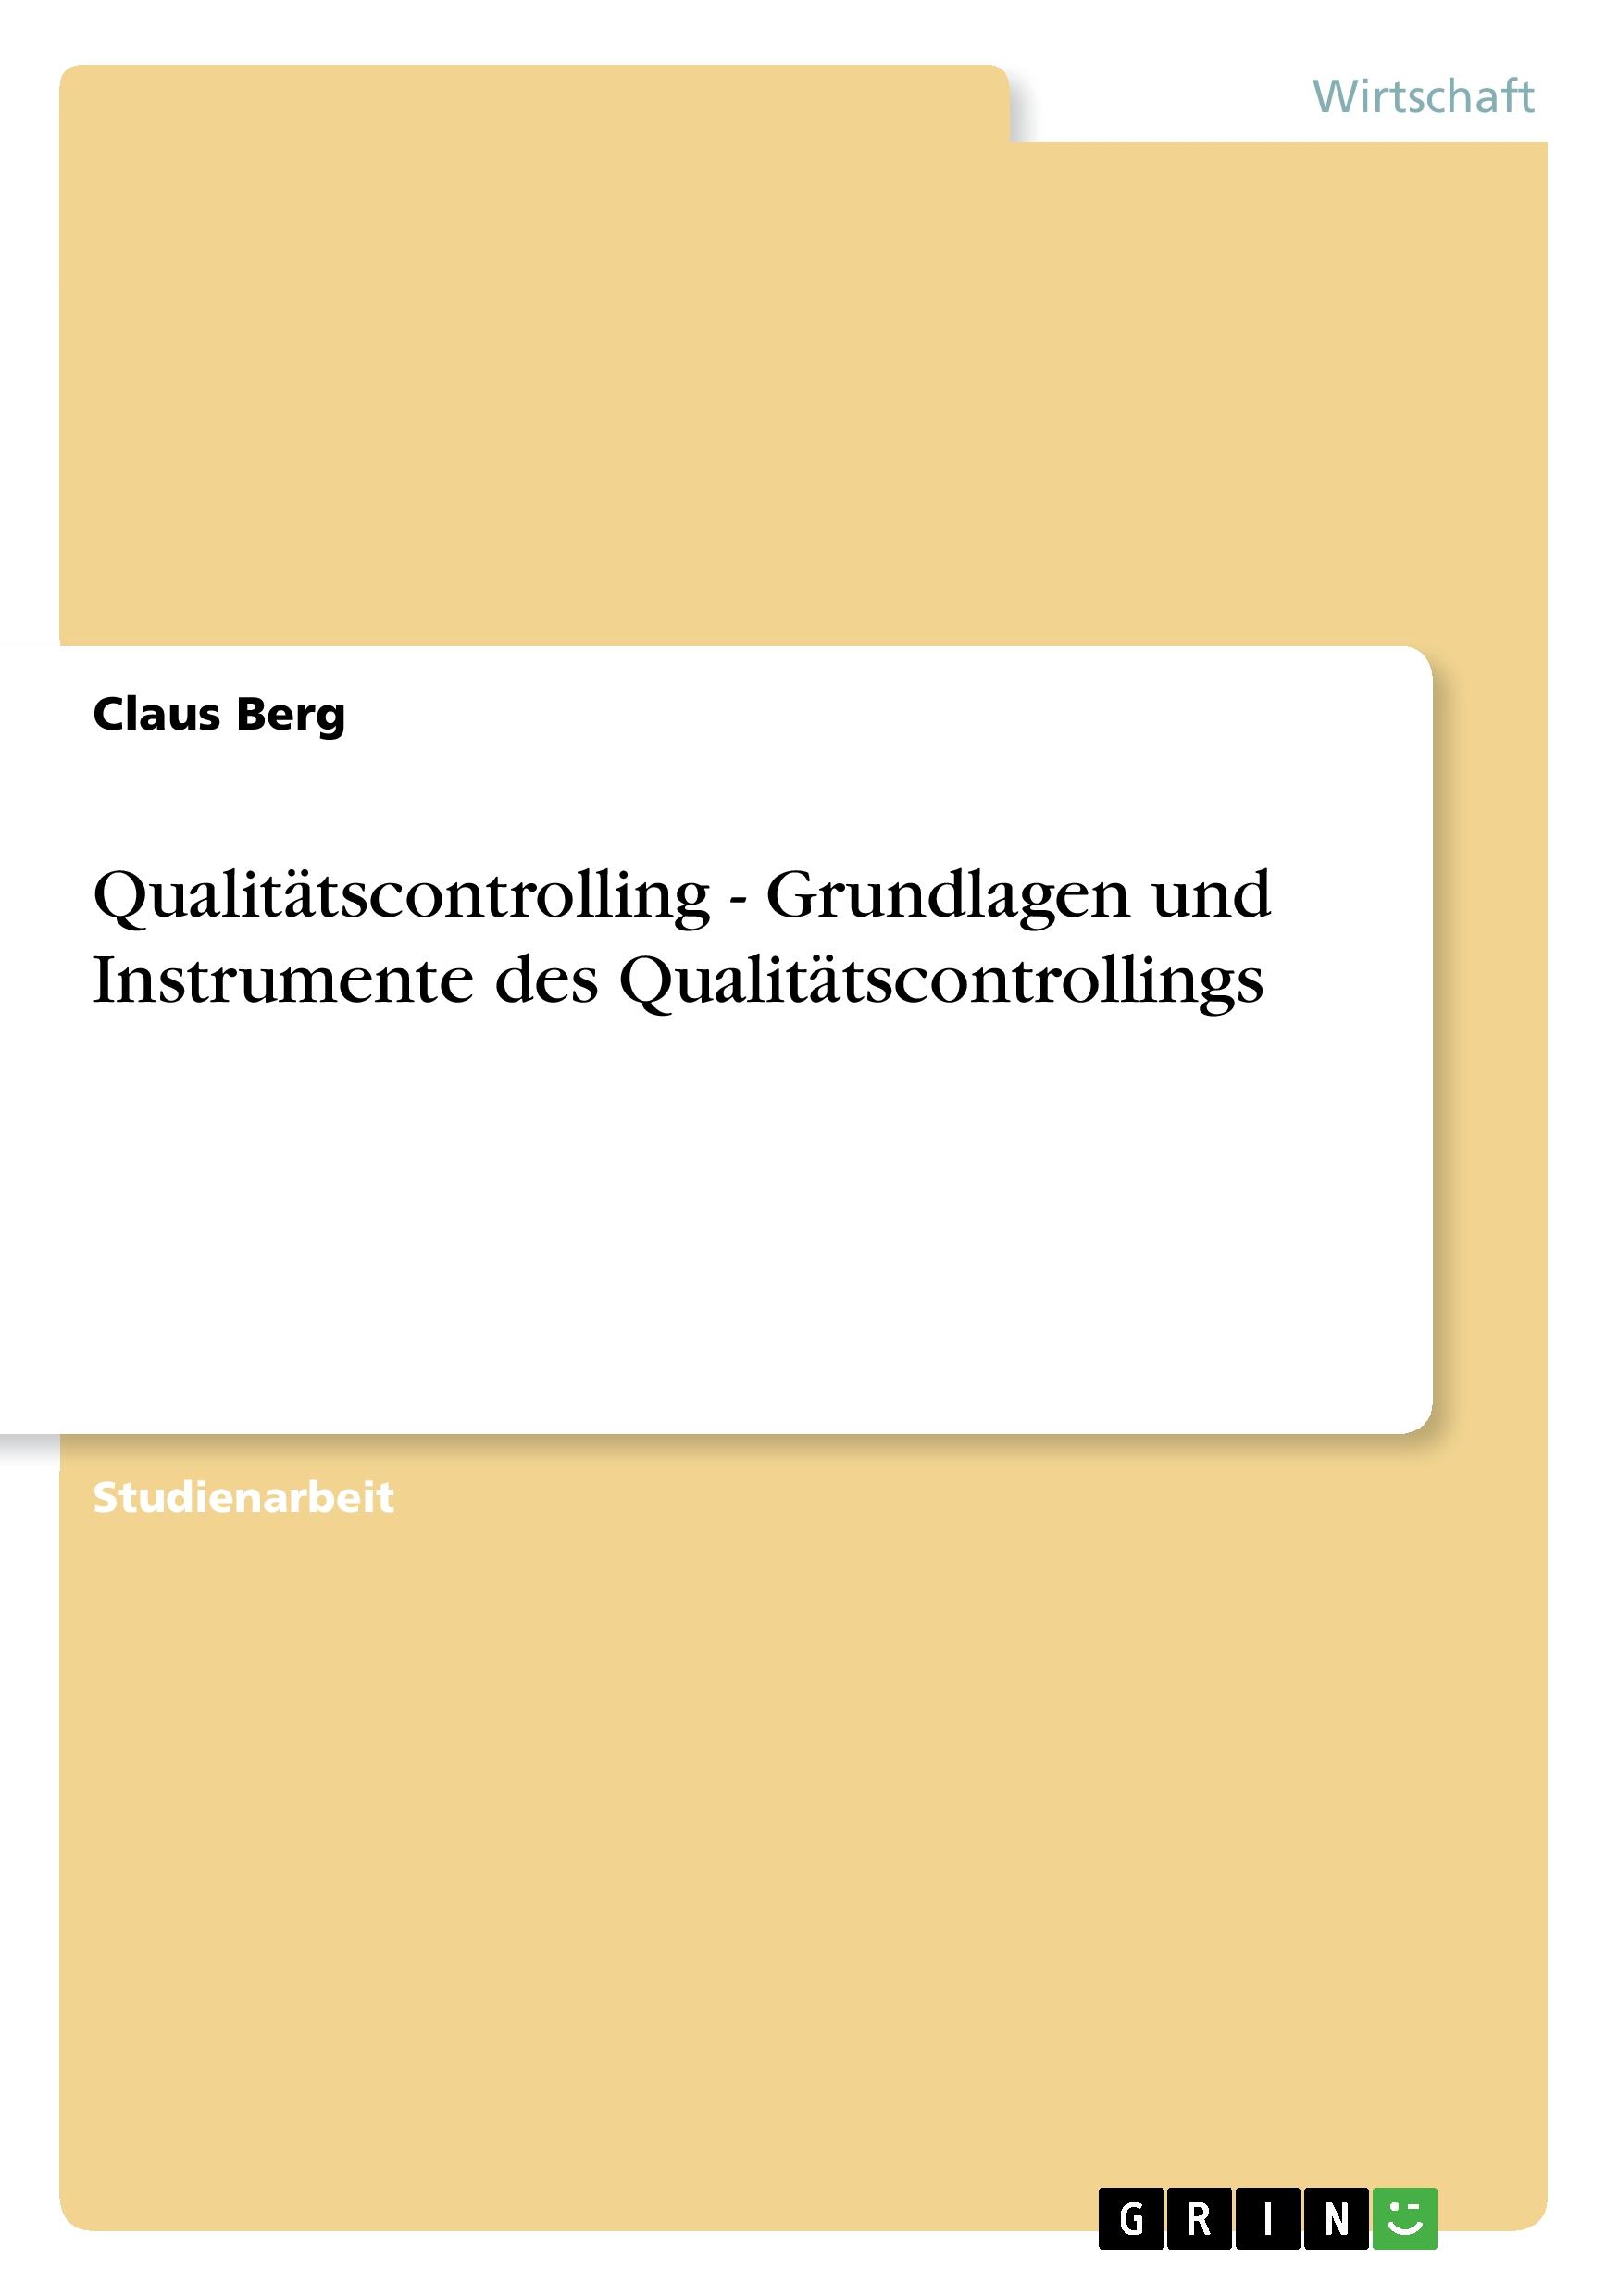 Qualitaetscontrolling - Grundlagen und Instrumente des Qualitaetscontrollings - Berg, Claus